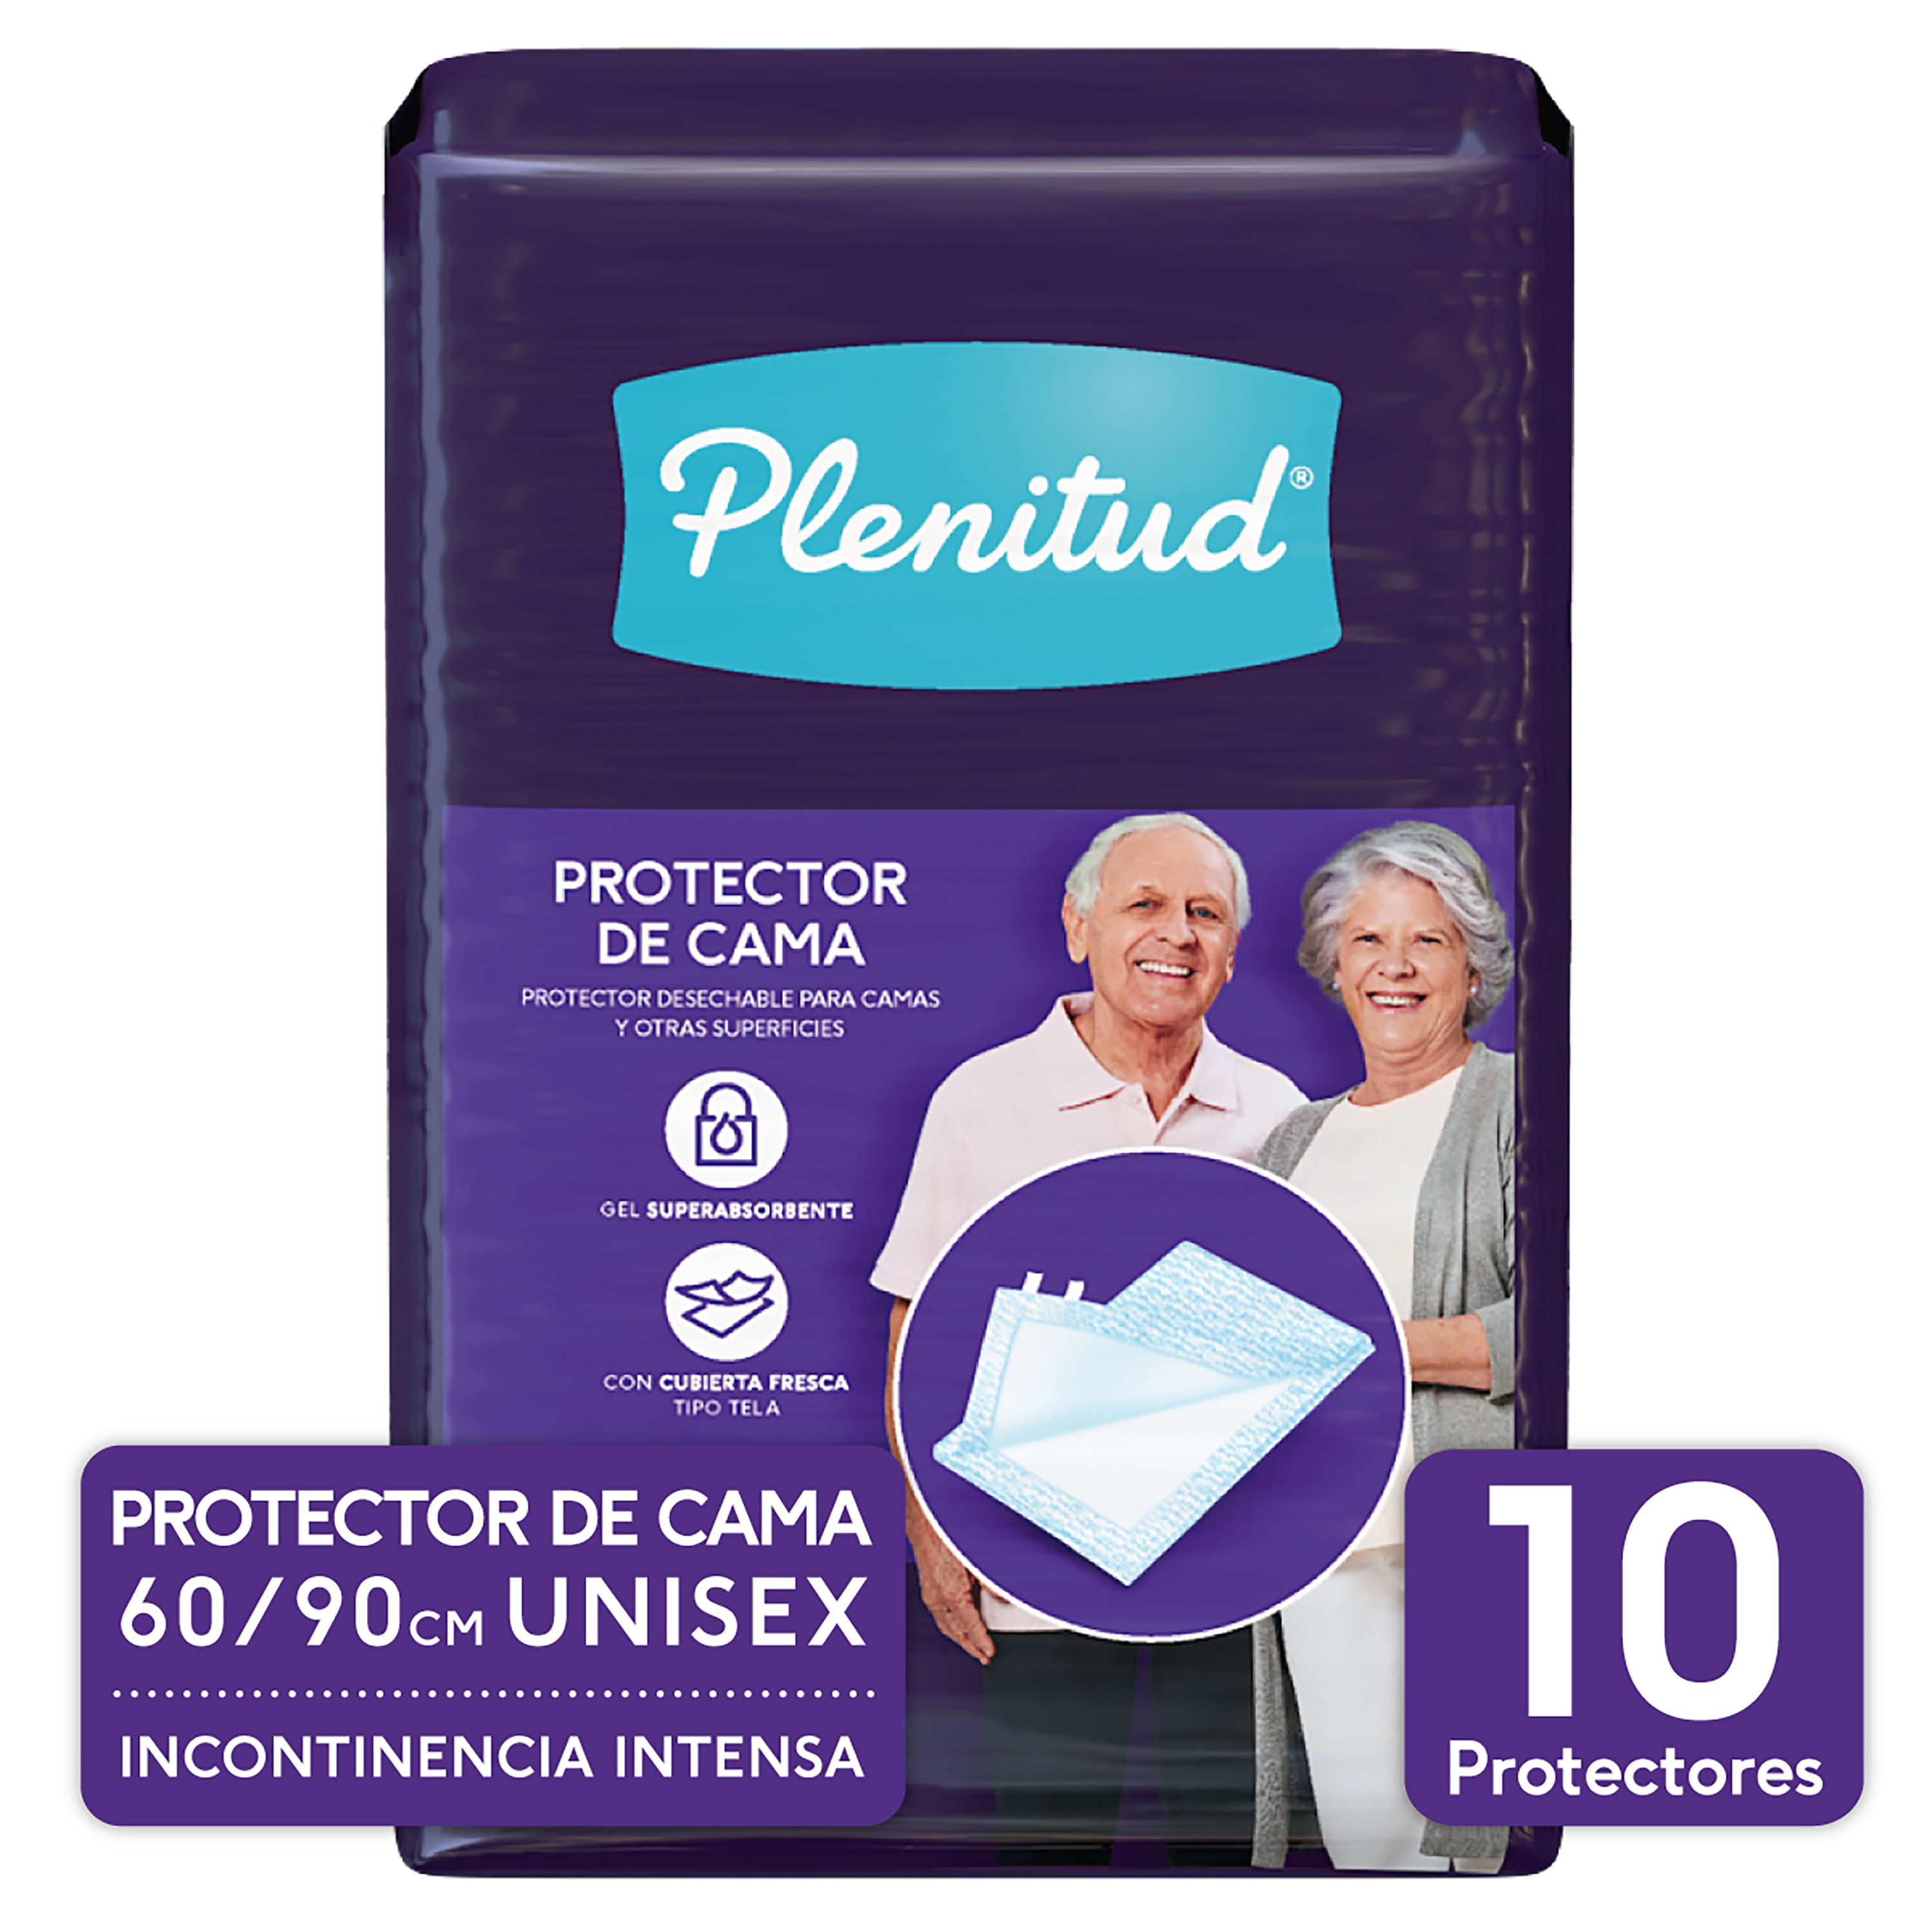 Comprar Protectores De Cama Plenitud 60/90cm Unisex Incontinencia Intensa -  10 Unidades